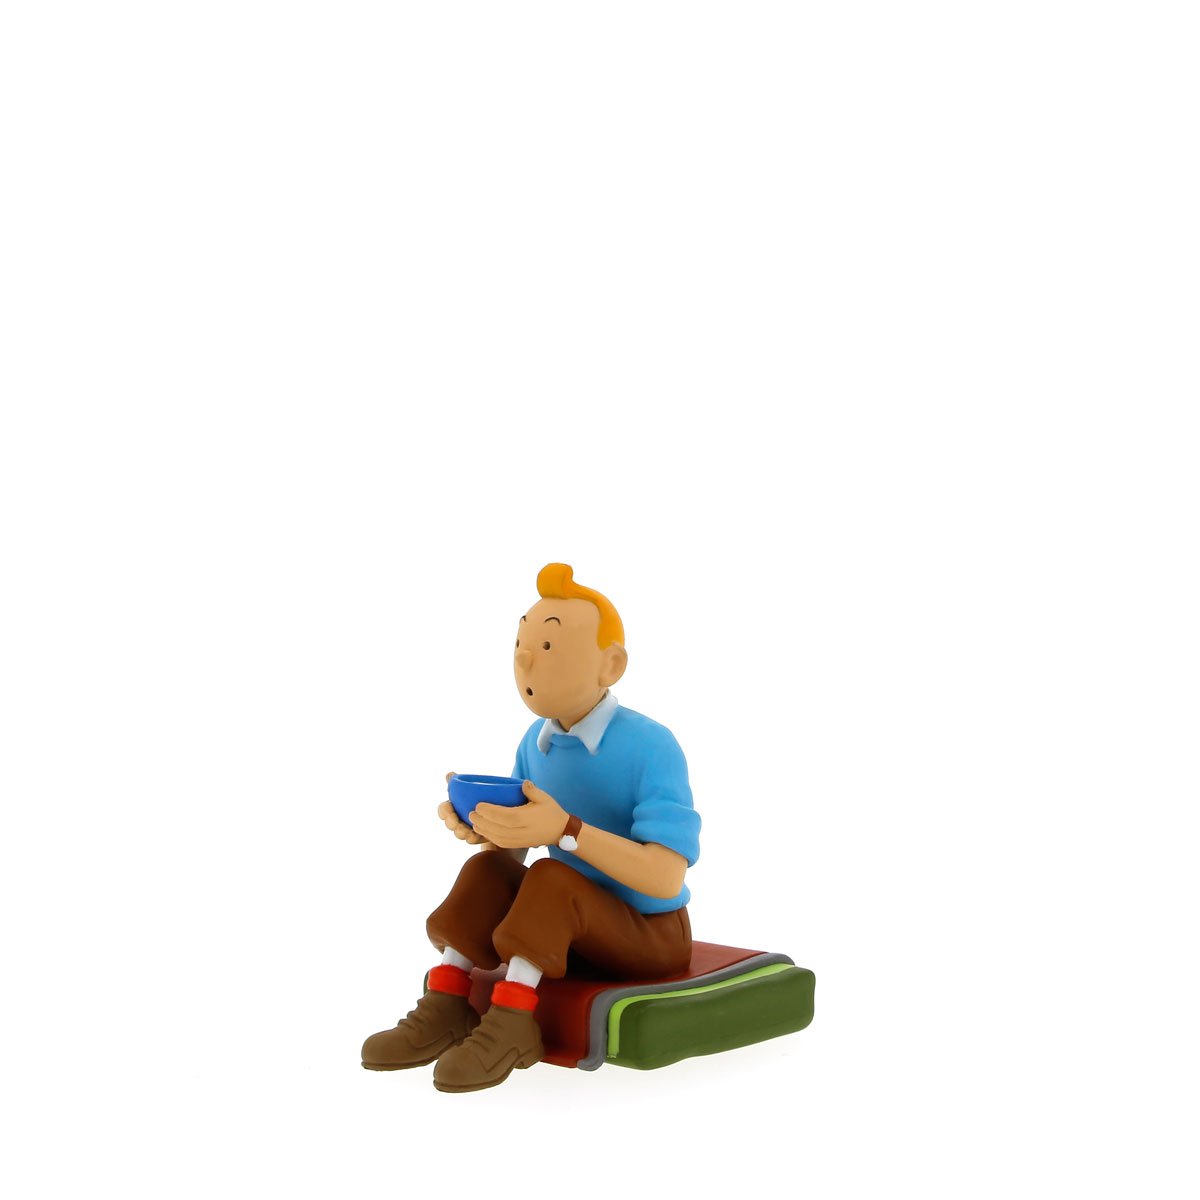 Tintin sitting